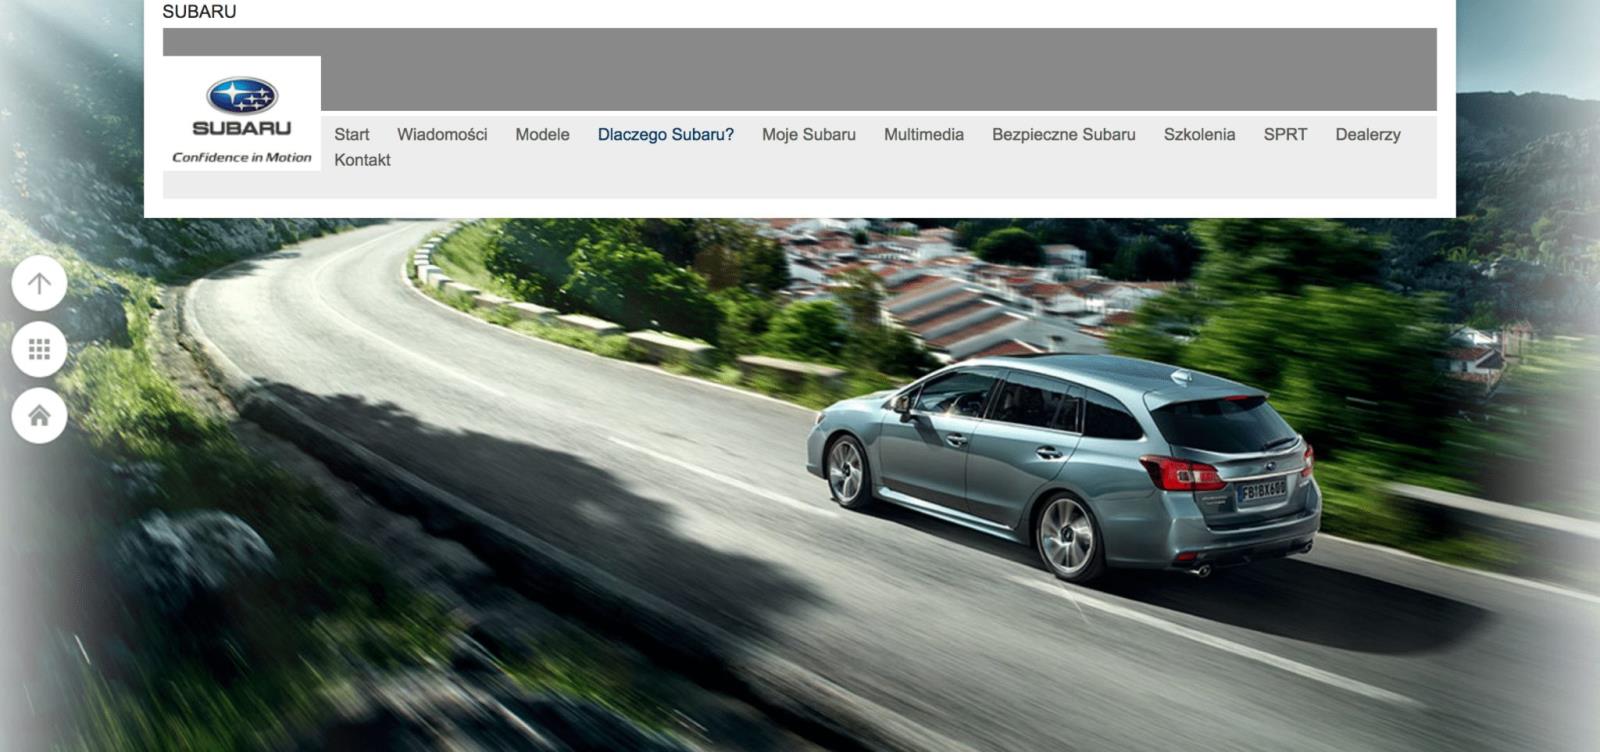 BZ WBK Leasing partnerem Subaru Oferta dla firm i osób